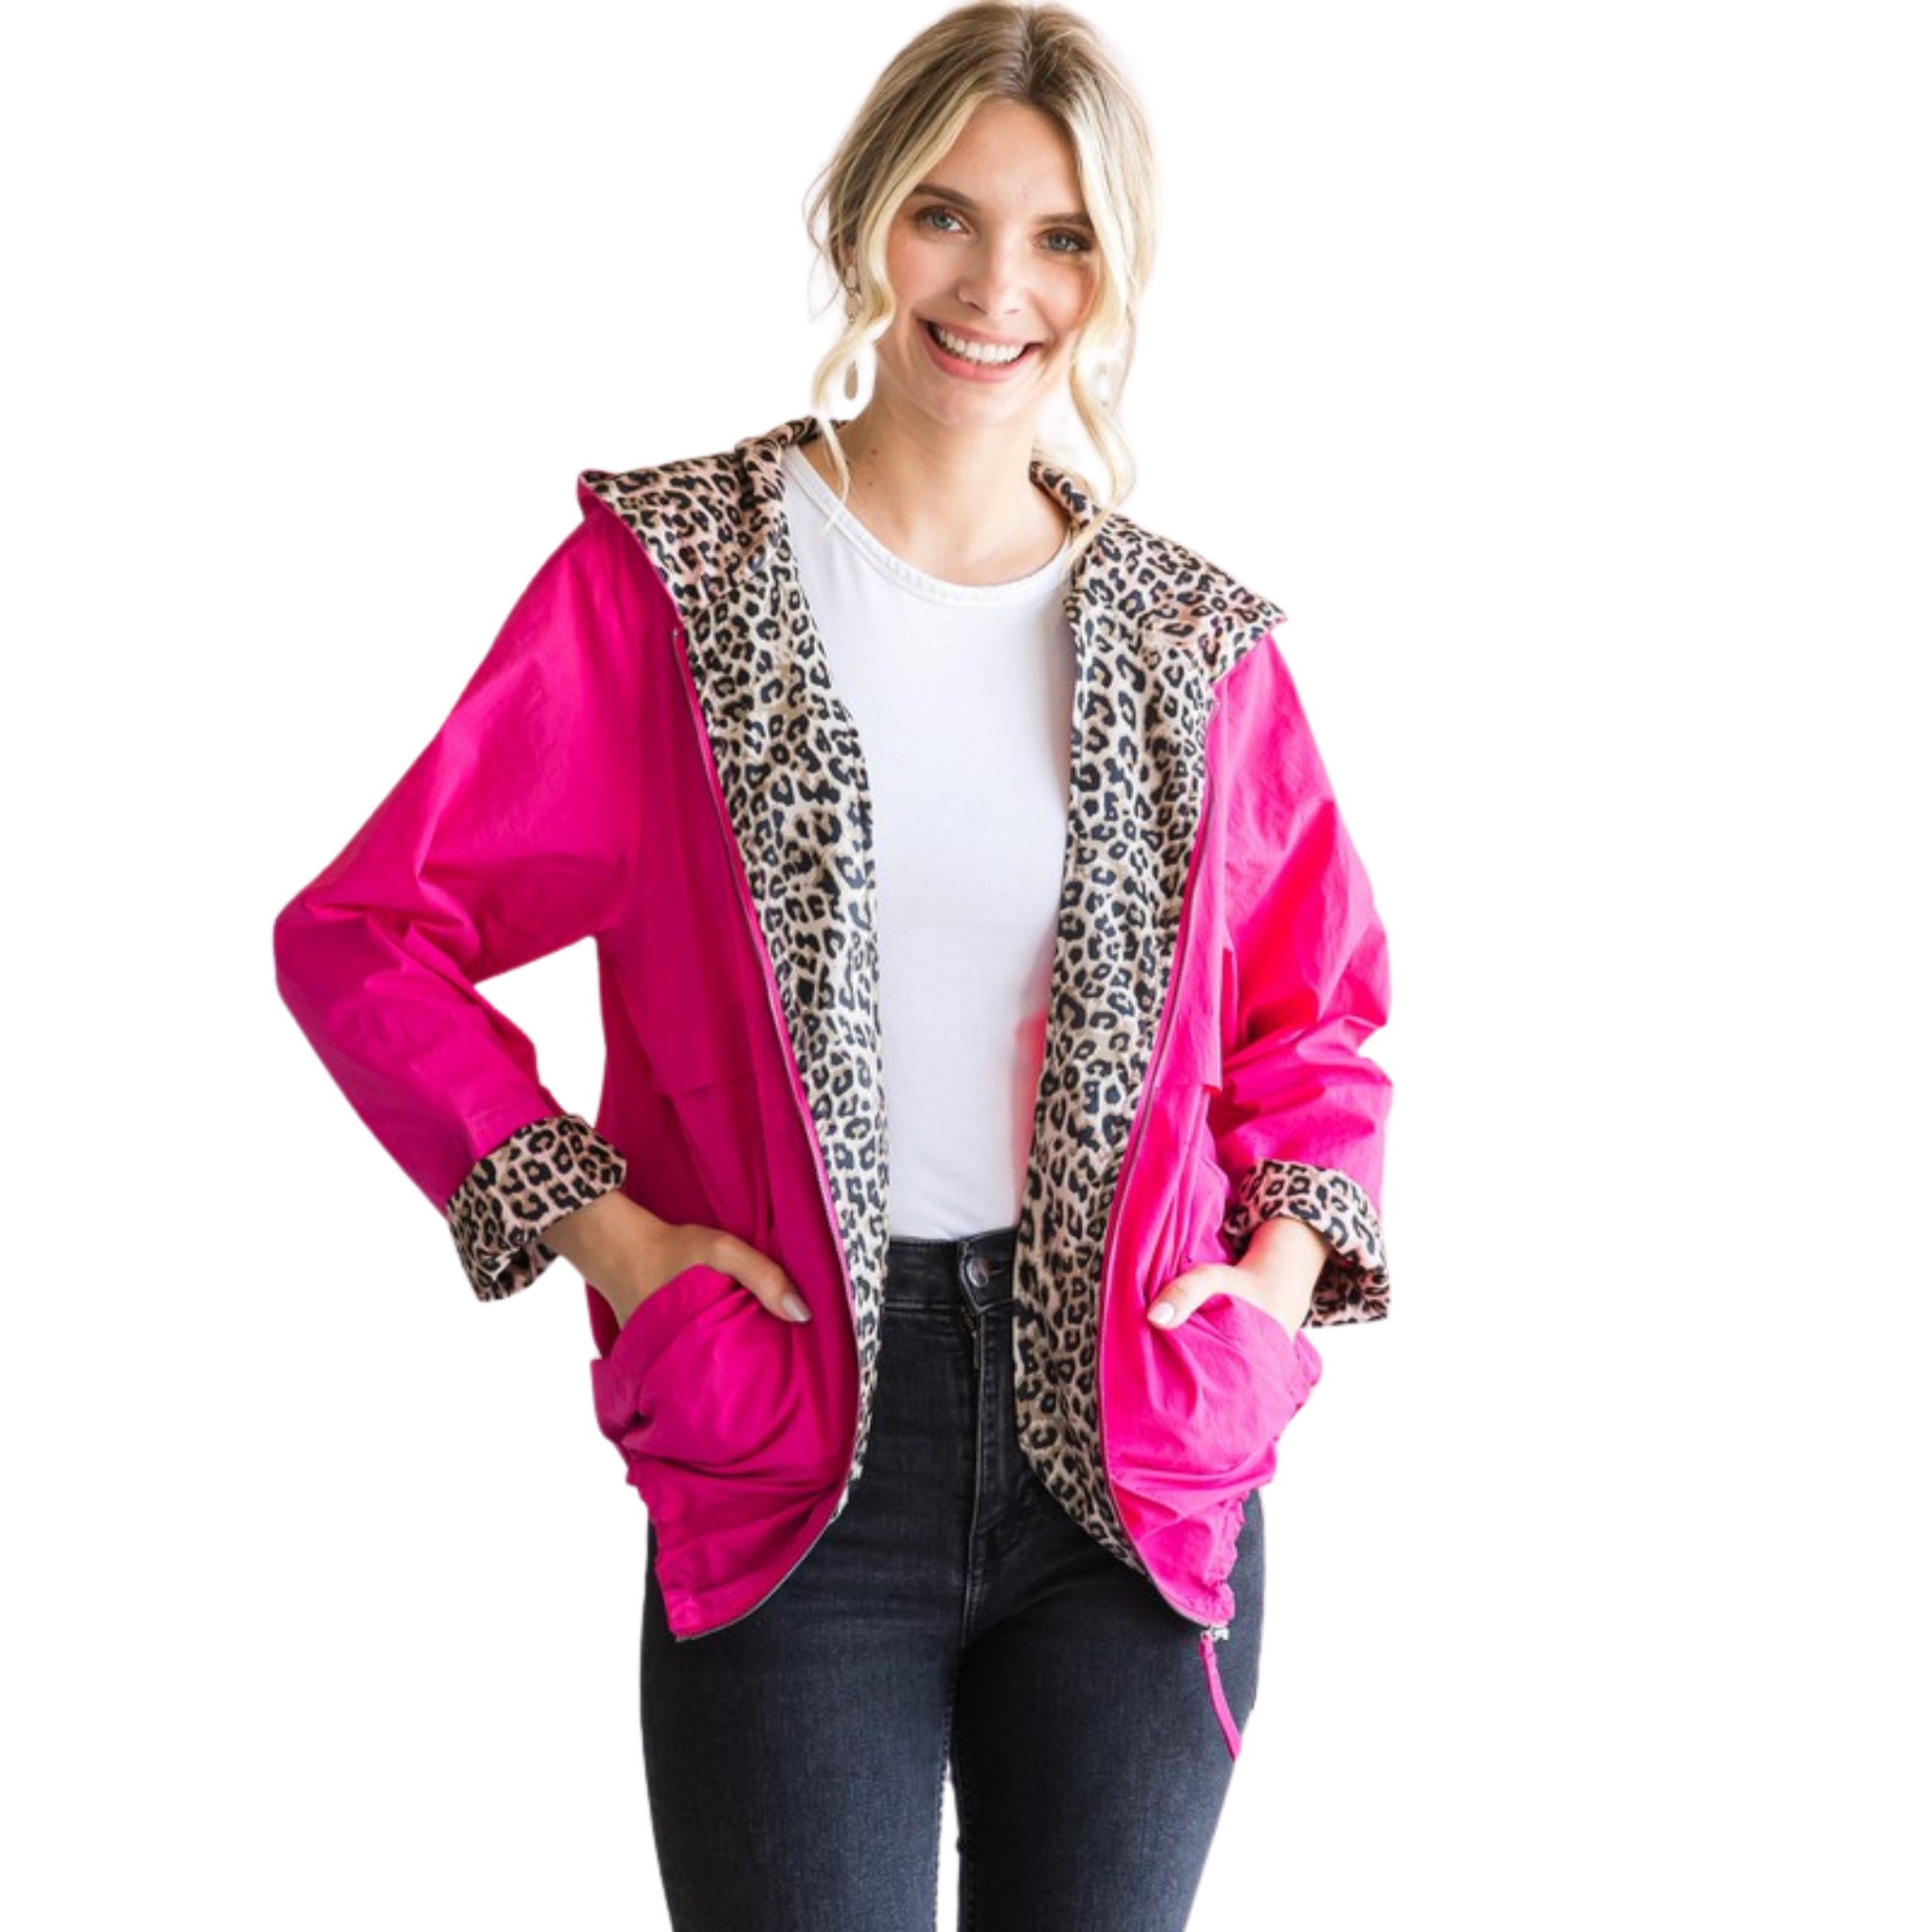 Leopard lined windbreaker jacket in hot pink